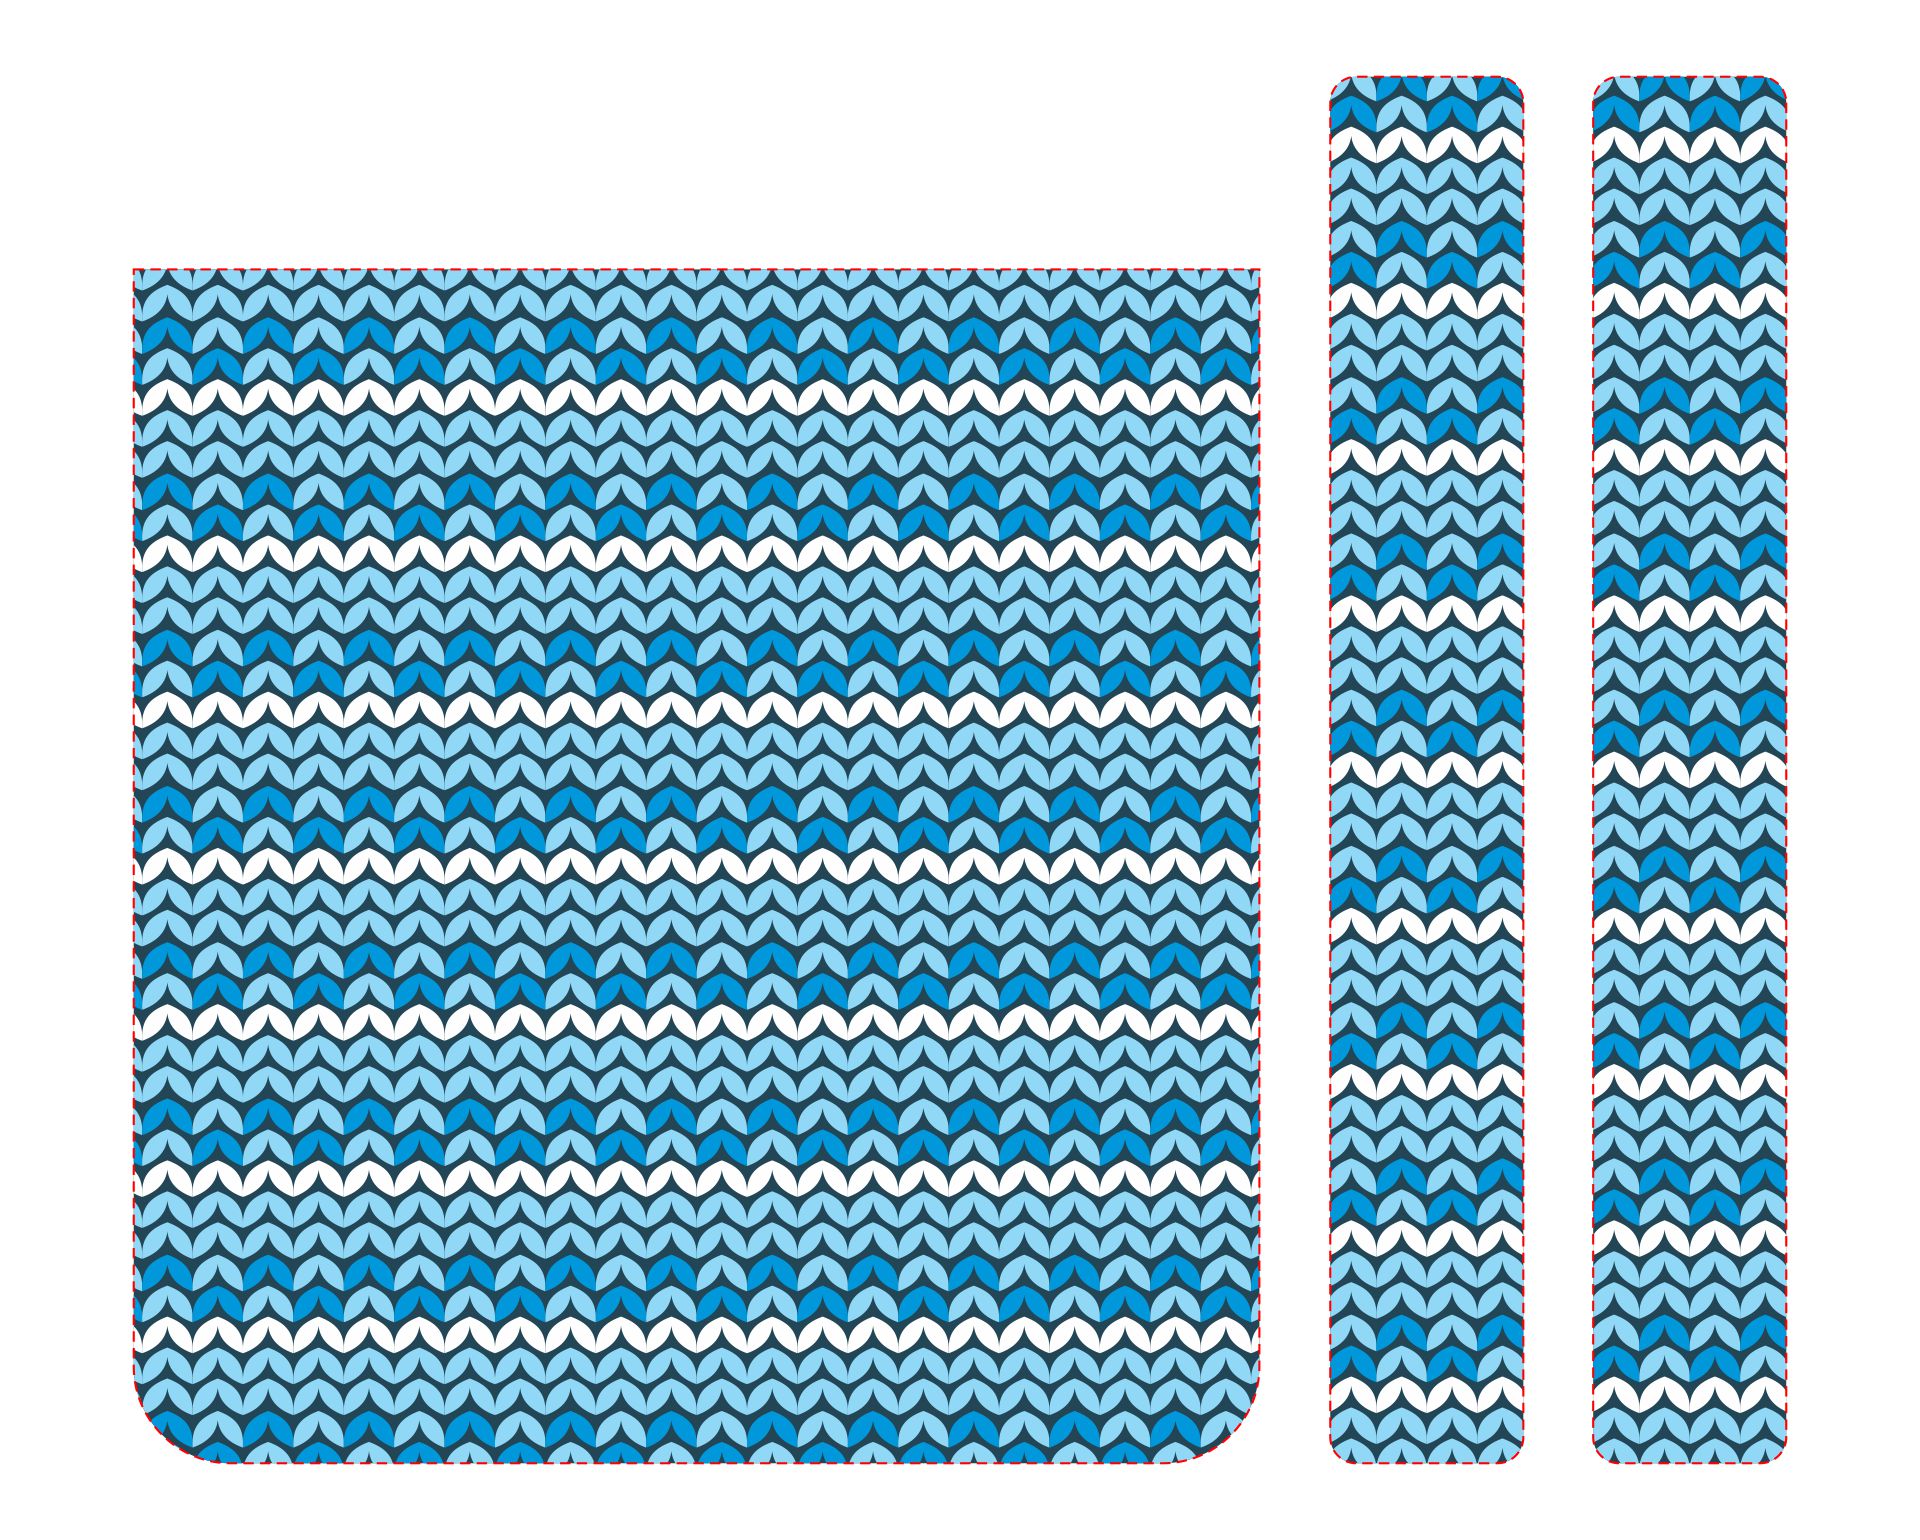 Crochet Walker Bag Pattern